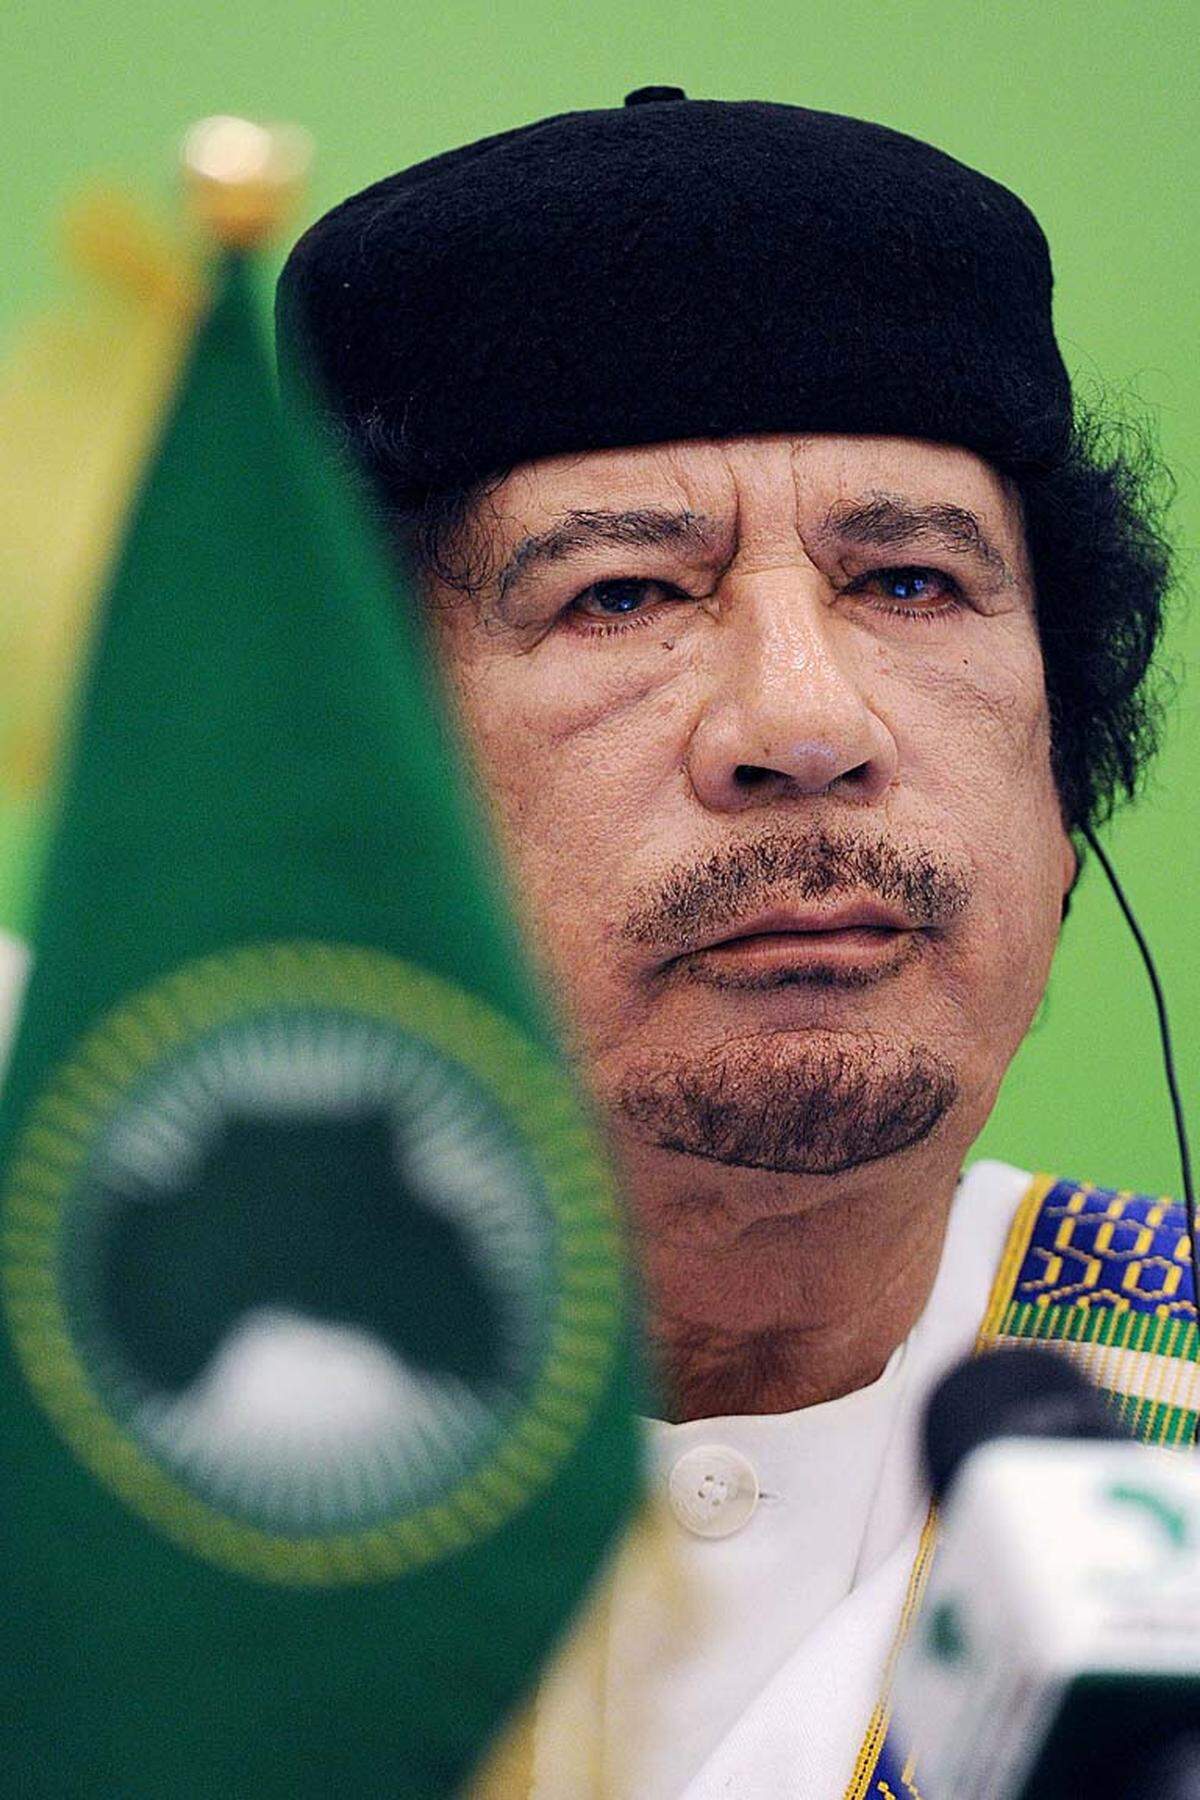 Seit 1969 sitzt „Revolutionsführer“ Gadhafi fest im Sattel, kein anderer arabischer Staatschef hielt sich so lange an der Macht wie er. Medien gleichgeschaltet, Opposition unterdrückt. Jahrzehntelang war er isoliert. Der Westen hofiert Gadhafi nach Entschädigung für Lockerbie-Attentat – auch wegen großer Öl- und Gasreserven im Land. Privatsektor unterentwickelt, Erdölindustrie in staatlicher Hand. Das Land prosperiert wirtschaftlich, die Armee lässt keinen Widerstand zu, vor allem aber unterstützen mächtige Stammesführer Gadhafi. Doch die Unzufriedenheit im Volk steigt.